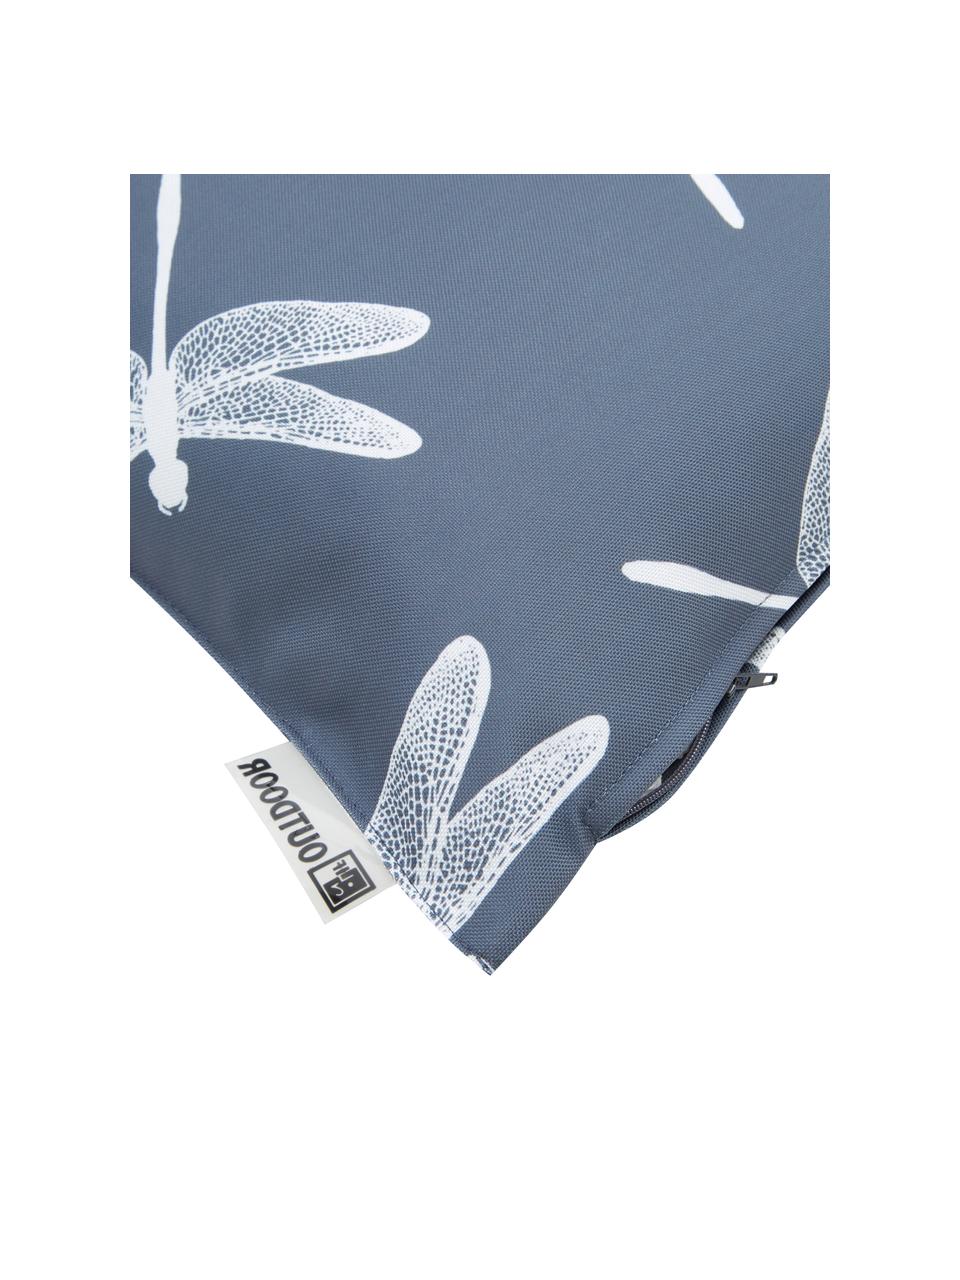 Venkovní polštář s motivy vážky Dragonfly, 100 % polyester, Tmavě šedá, bílá, Š 47 cm